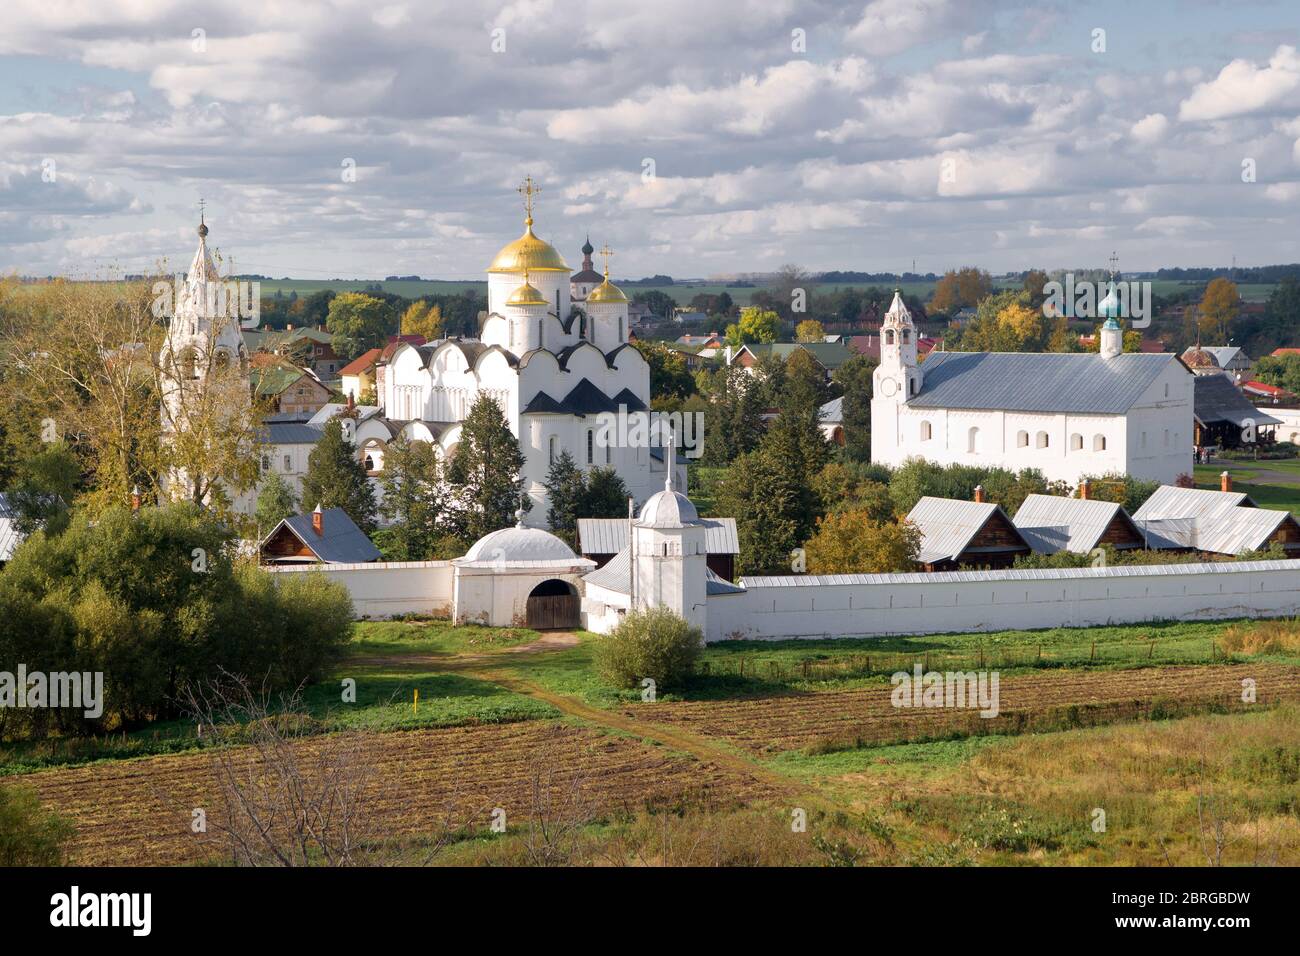 Convento dell'intercessione (monastero di Pokrovsky) a Suzdal, Russia. L'antica città di Suzdal è un'attrazione turistica che fa parte dell'anello d'Oro di Ru Foto Stock